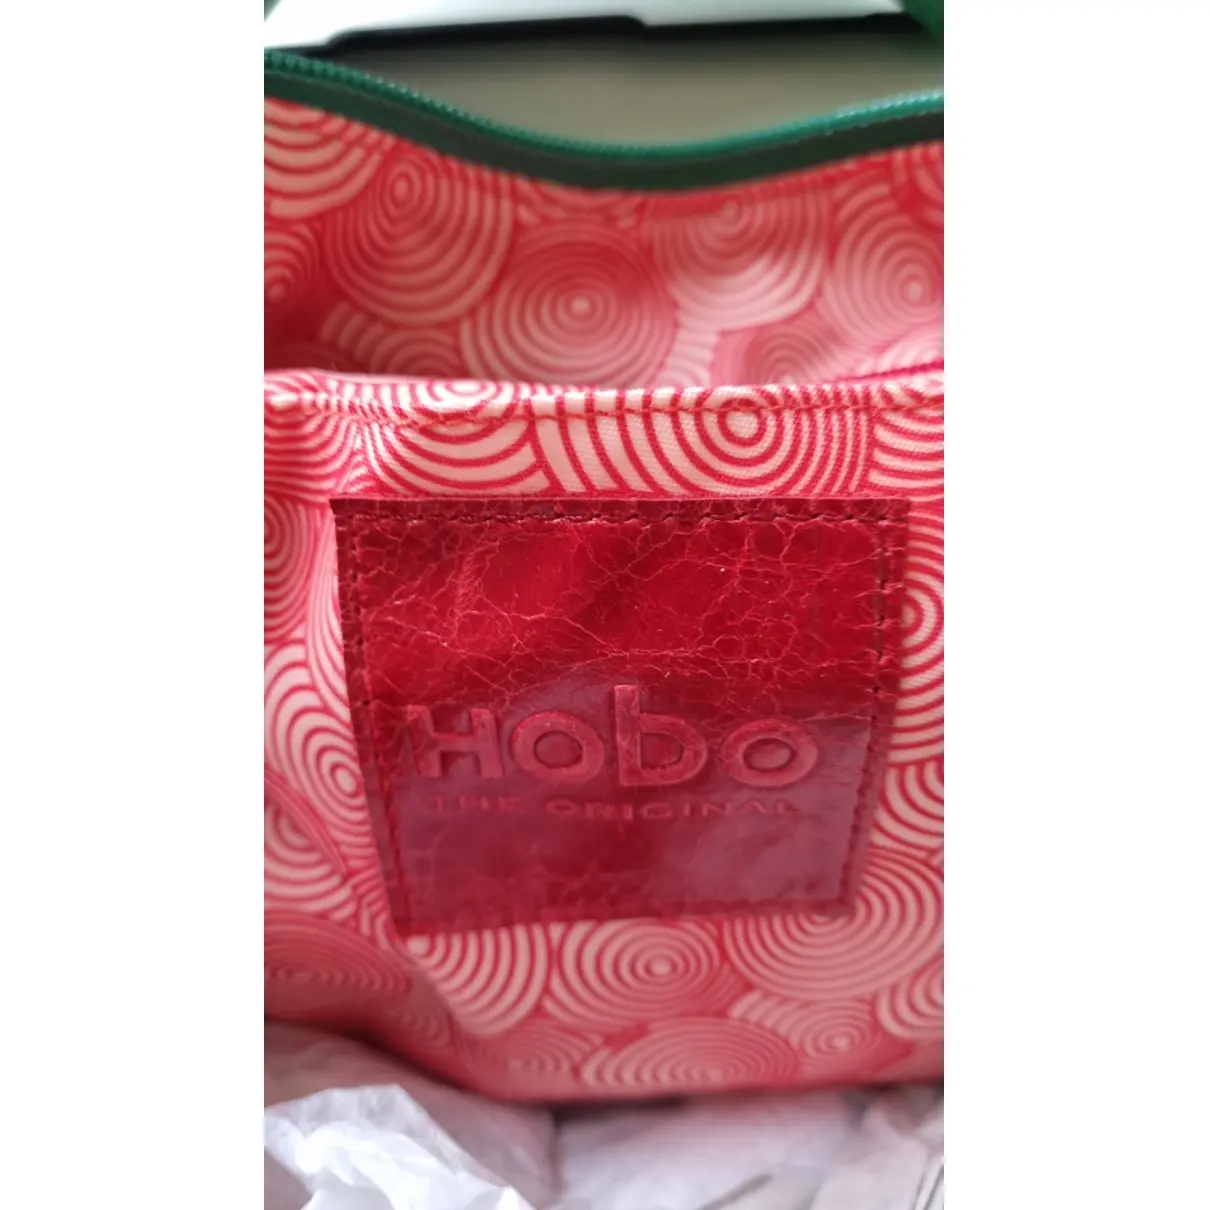 Luxury Hobo International Handbags Women